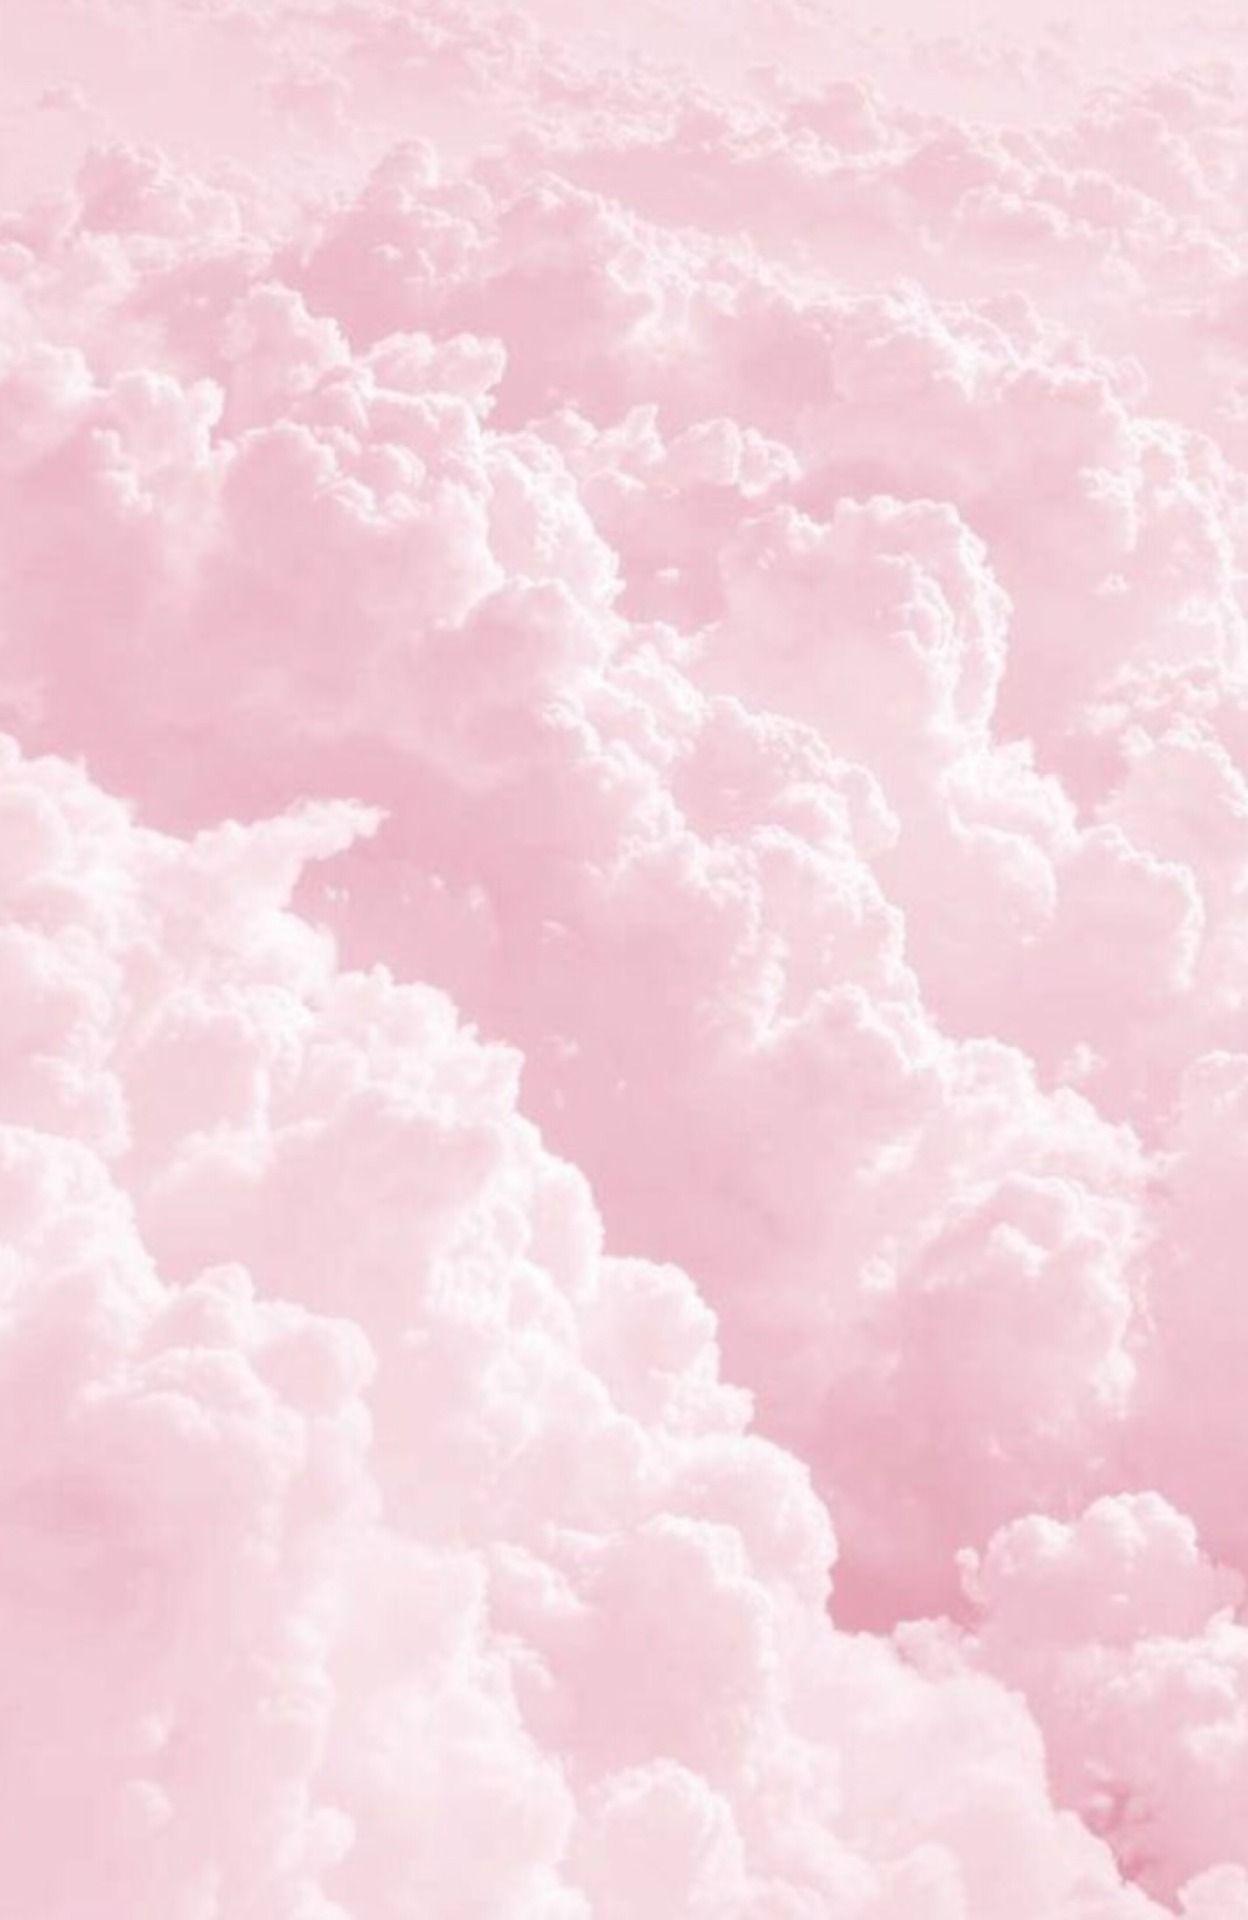 Hãy đến với hình nền xinh đẹp màu hồng pastel để tìm kiếm những khoảnh khắc đặc biệt. Với màu sắc ngọt ngào, hình nền này sẽ mang đến cho bạn cảm giác thư thái và bình yên mỗi khi bắt đầu một ngày mới.